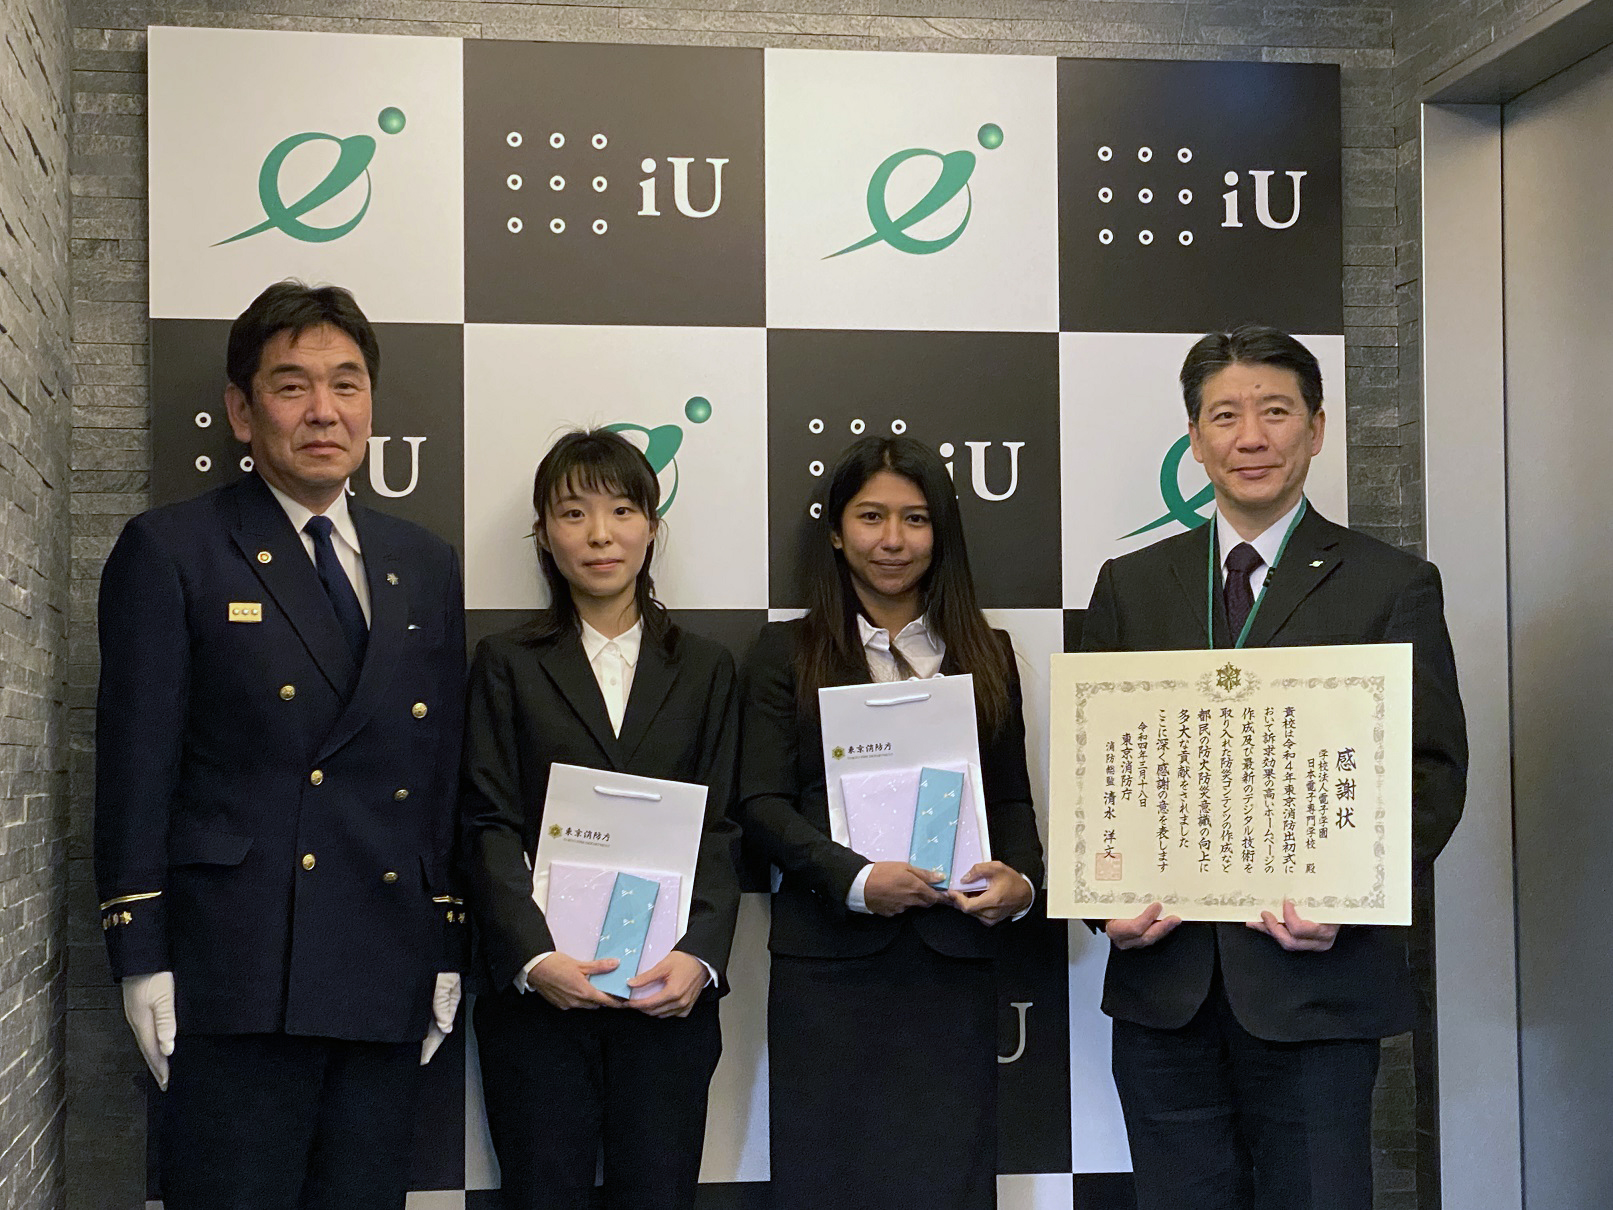 東京消防庁からWebデザイン科の学生が感謝状を授与されました